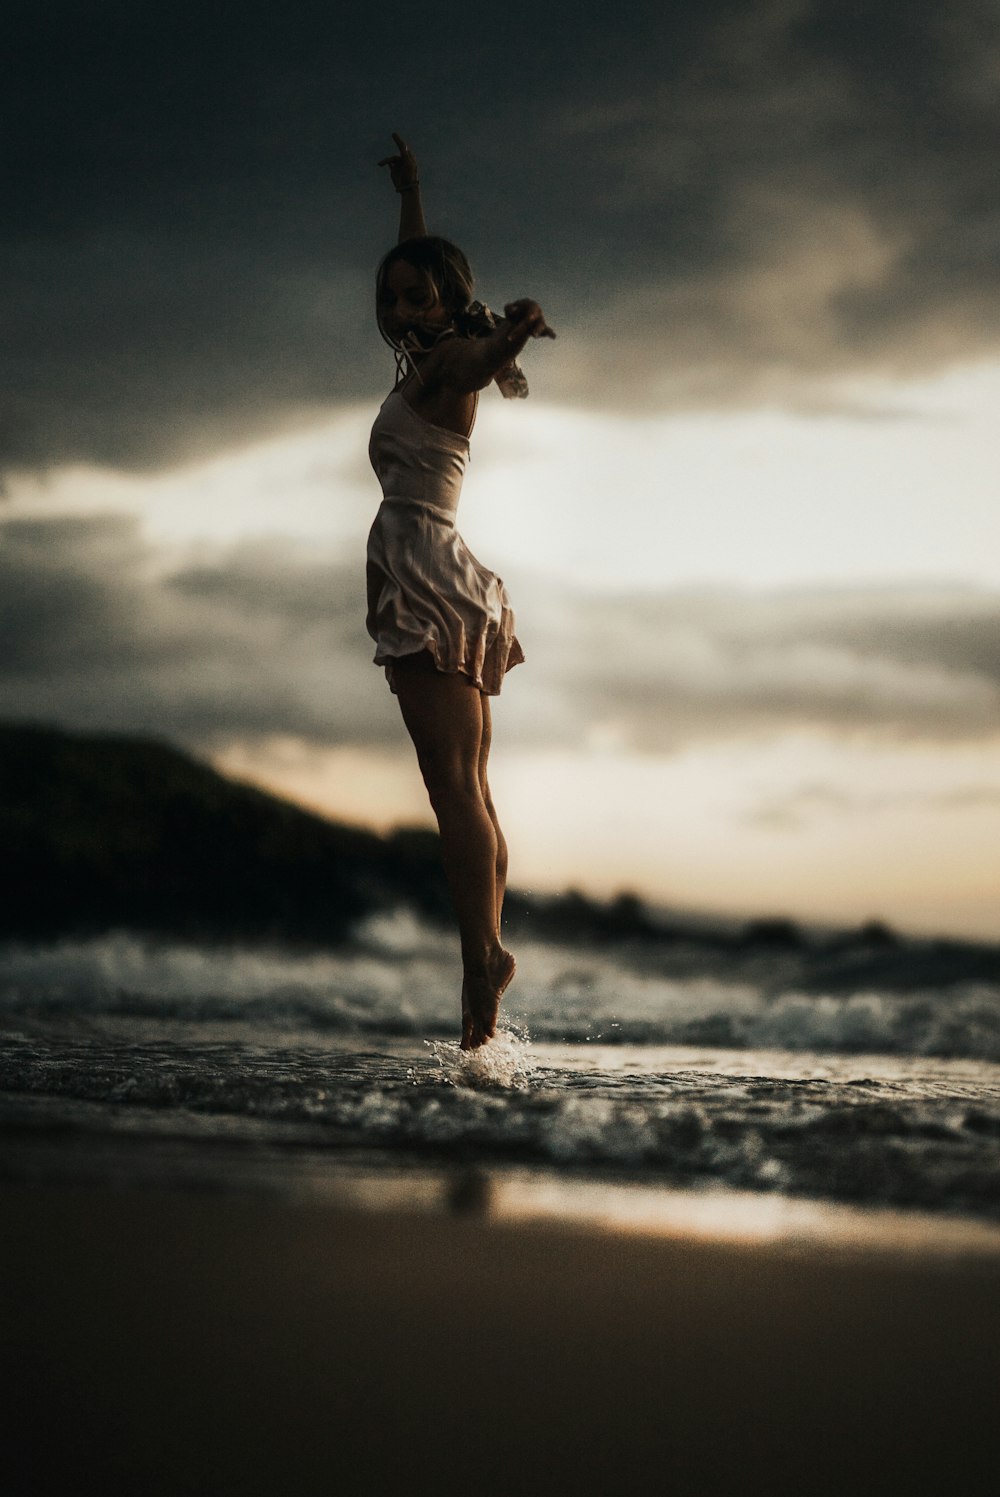 女性が水に飛び込むセレクティブフォーカス写真